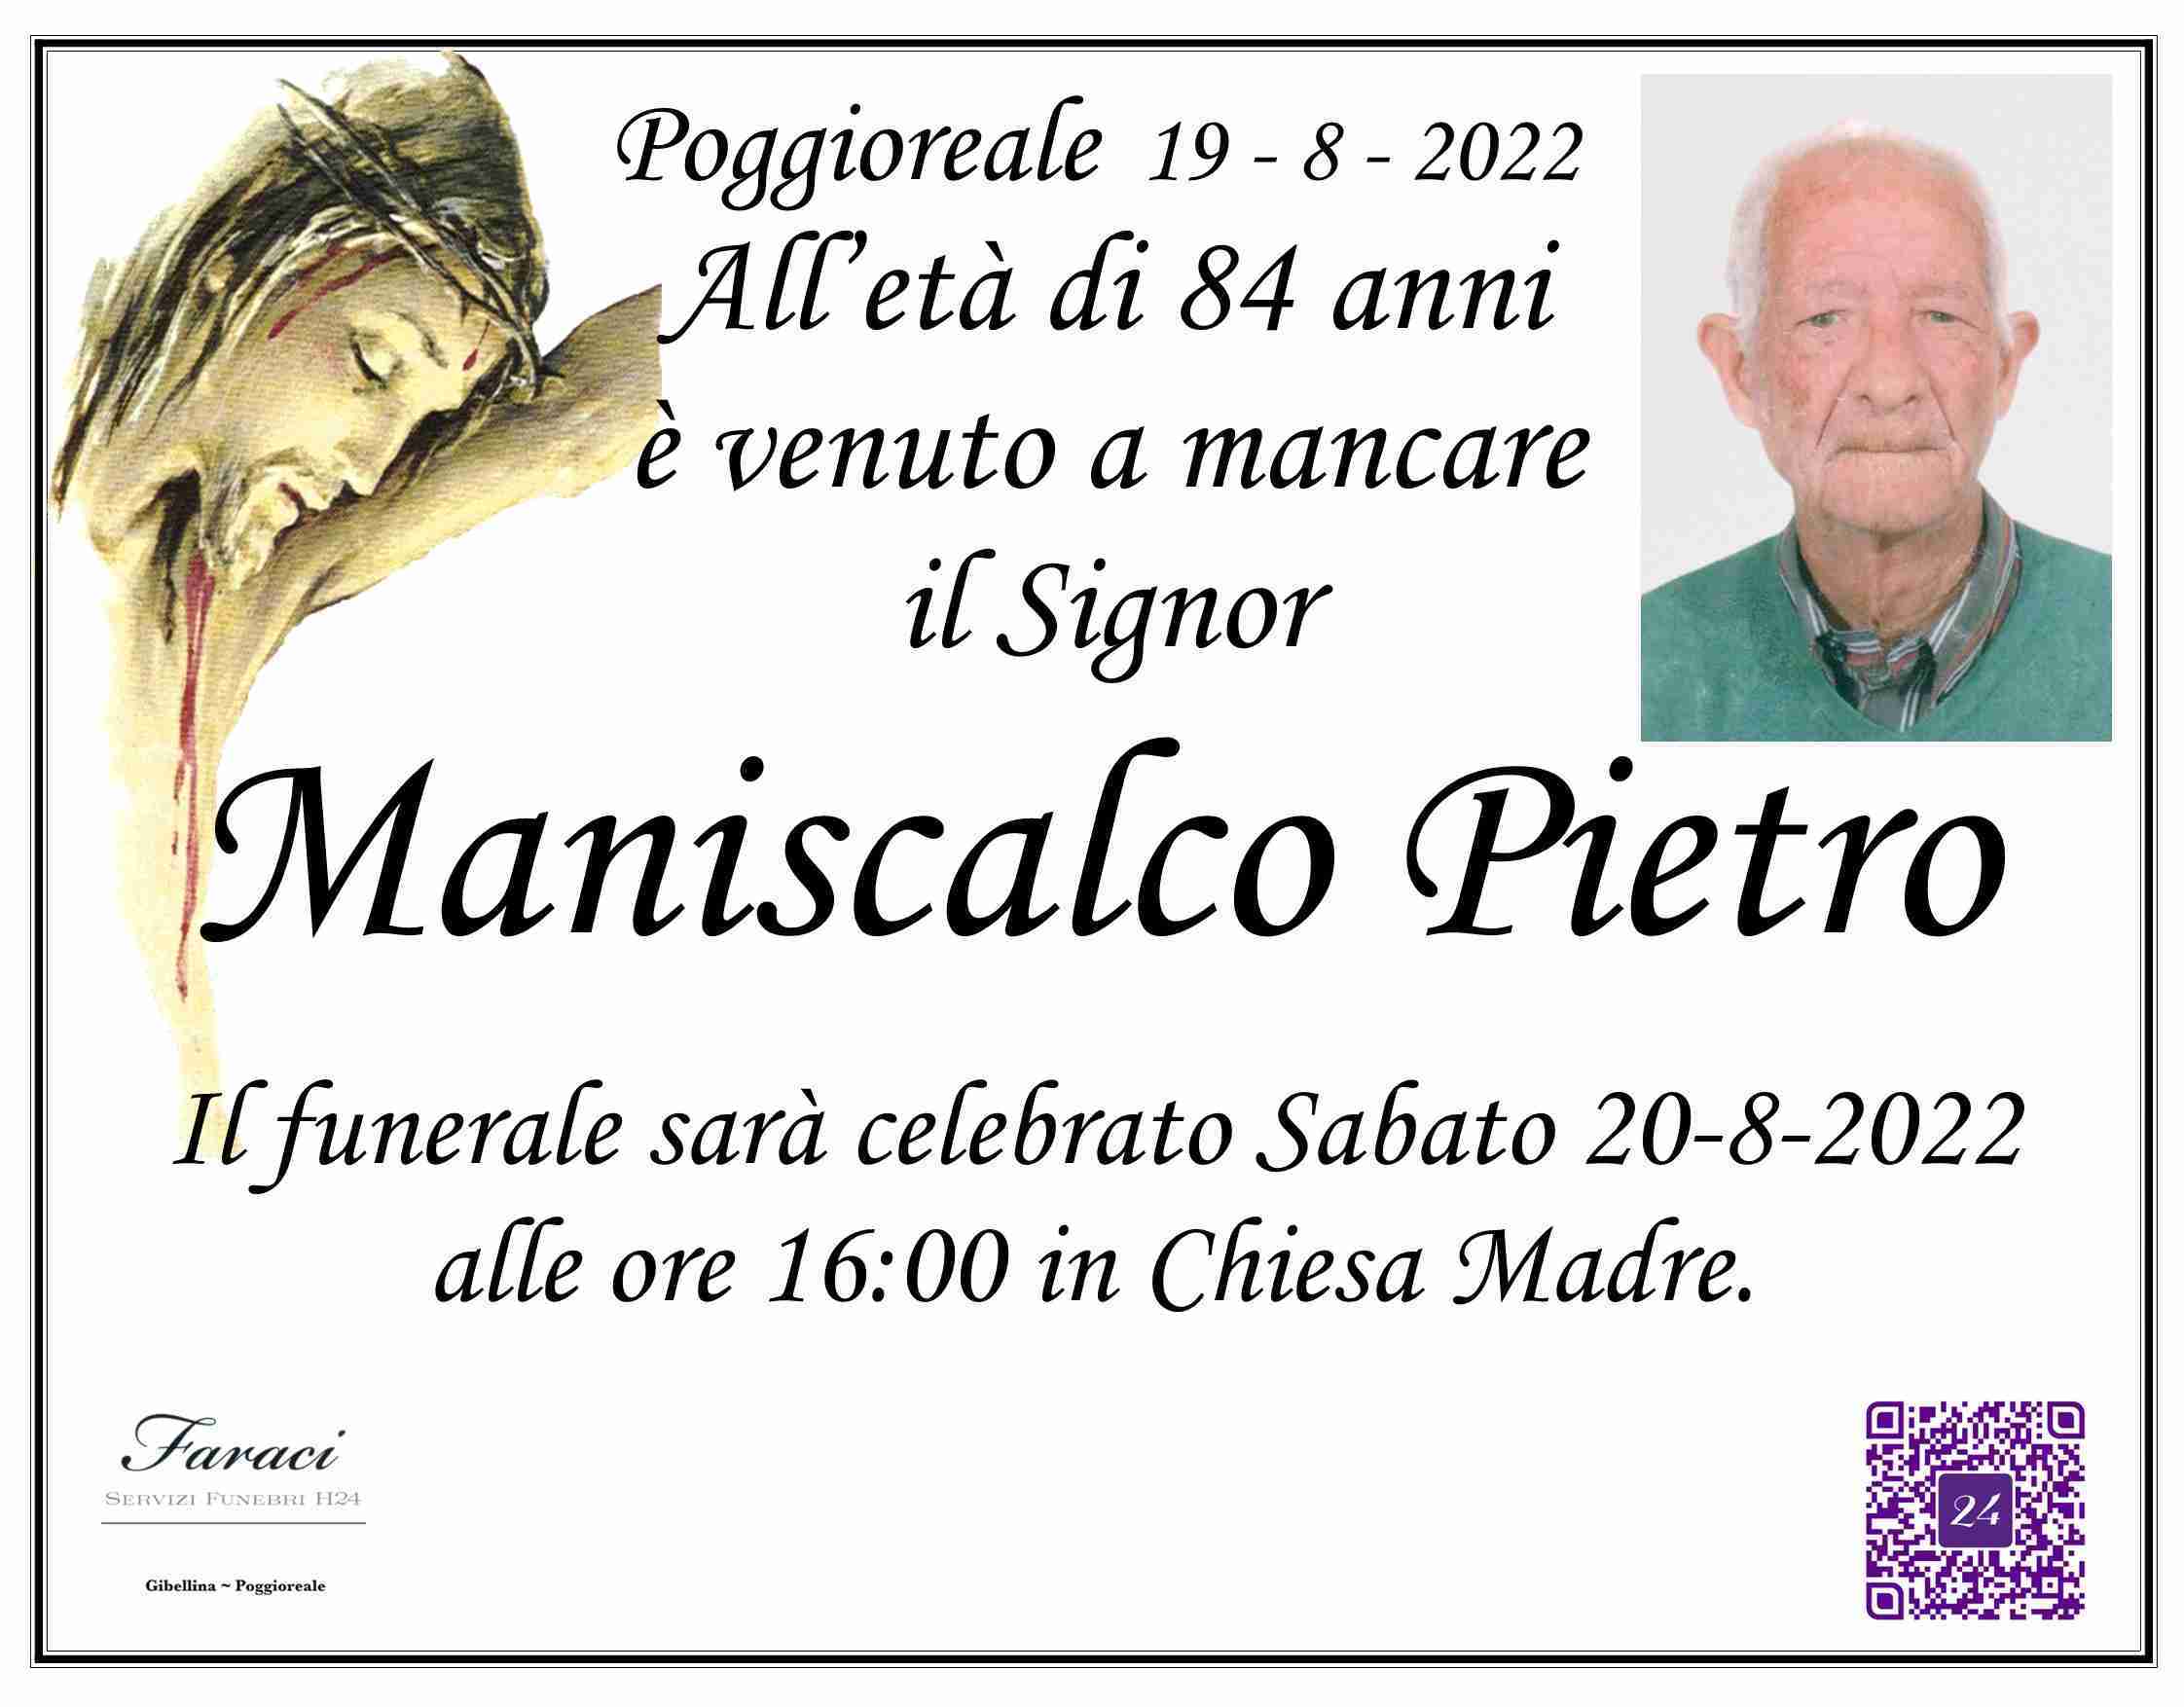 Pietro Maniscalco